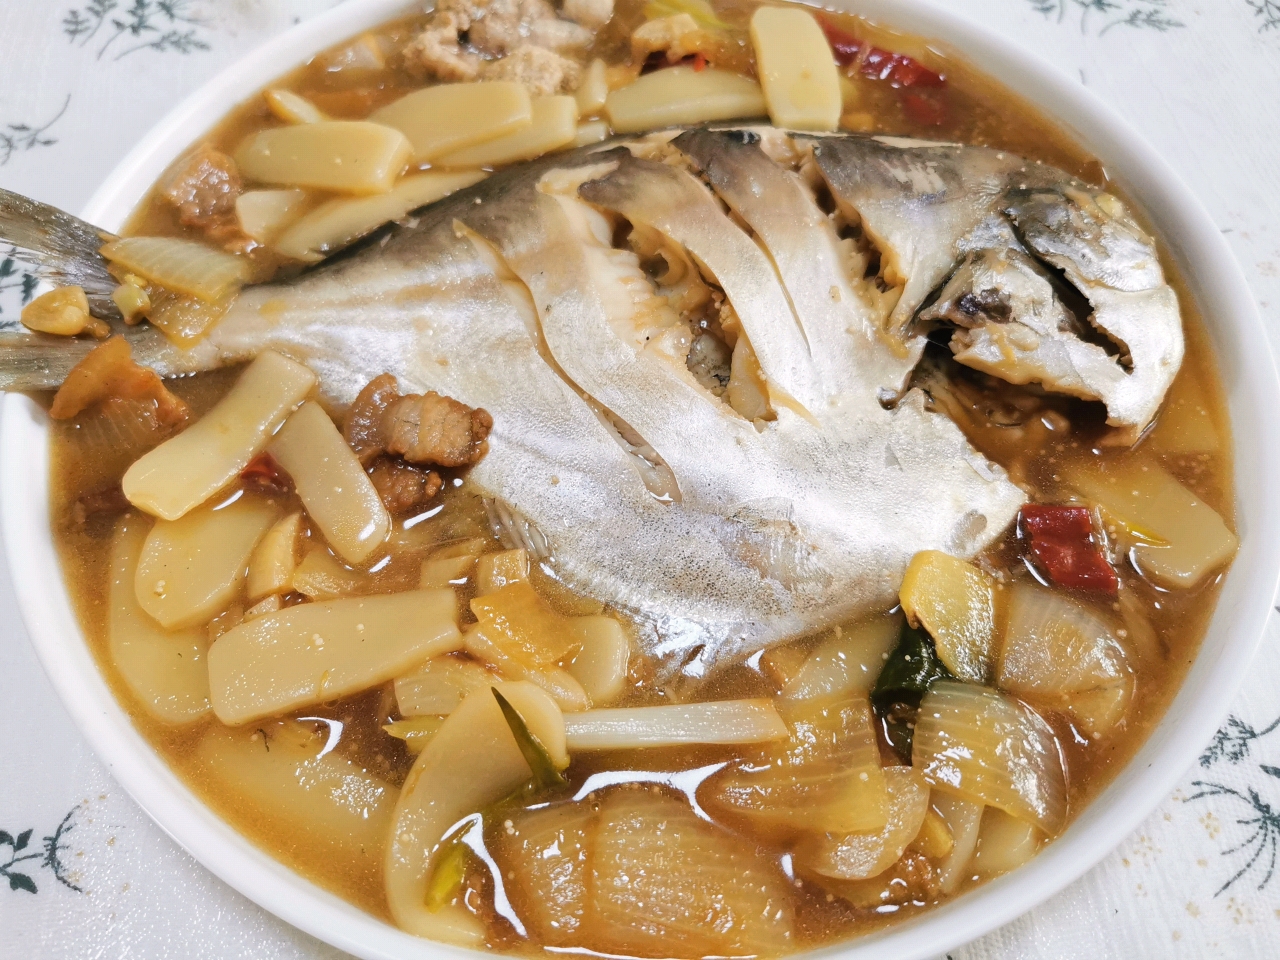 台州鲳鱼烧年糕